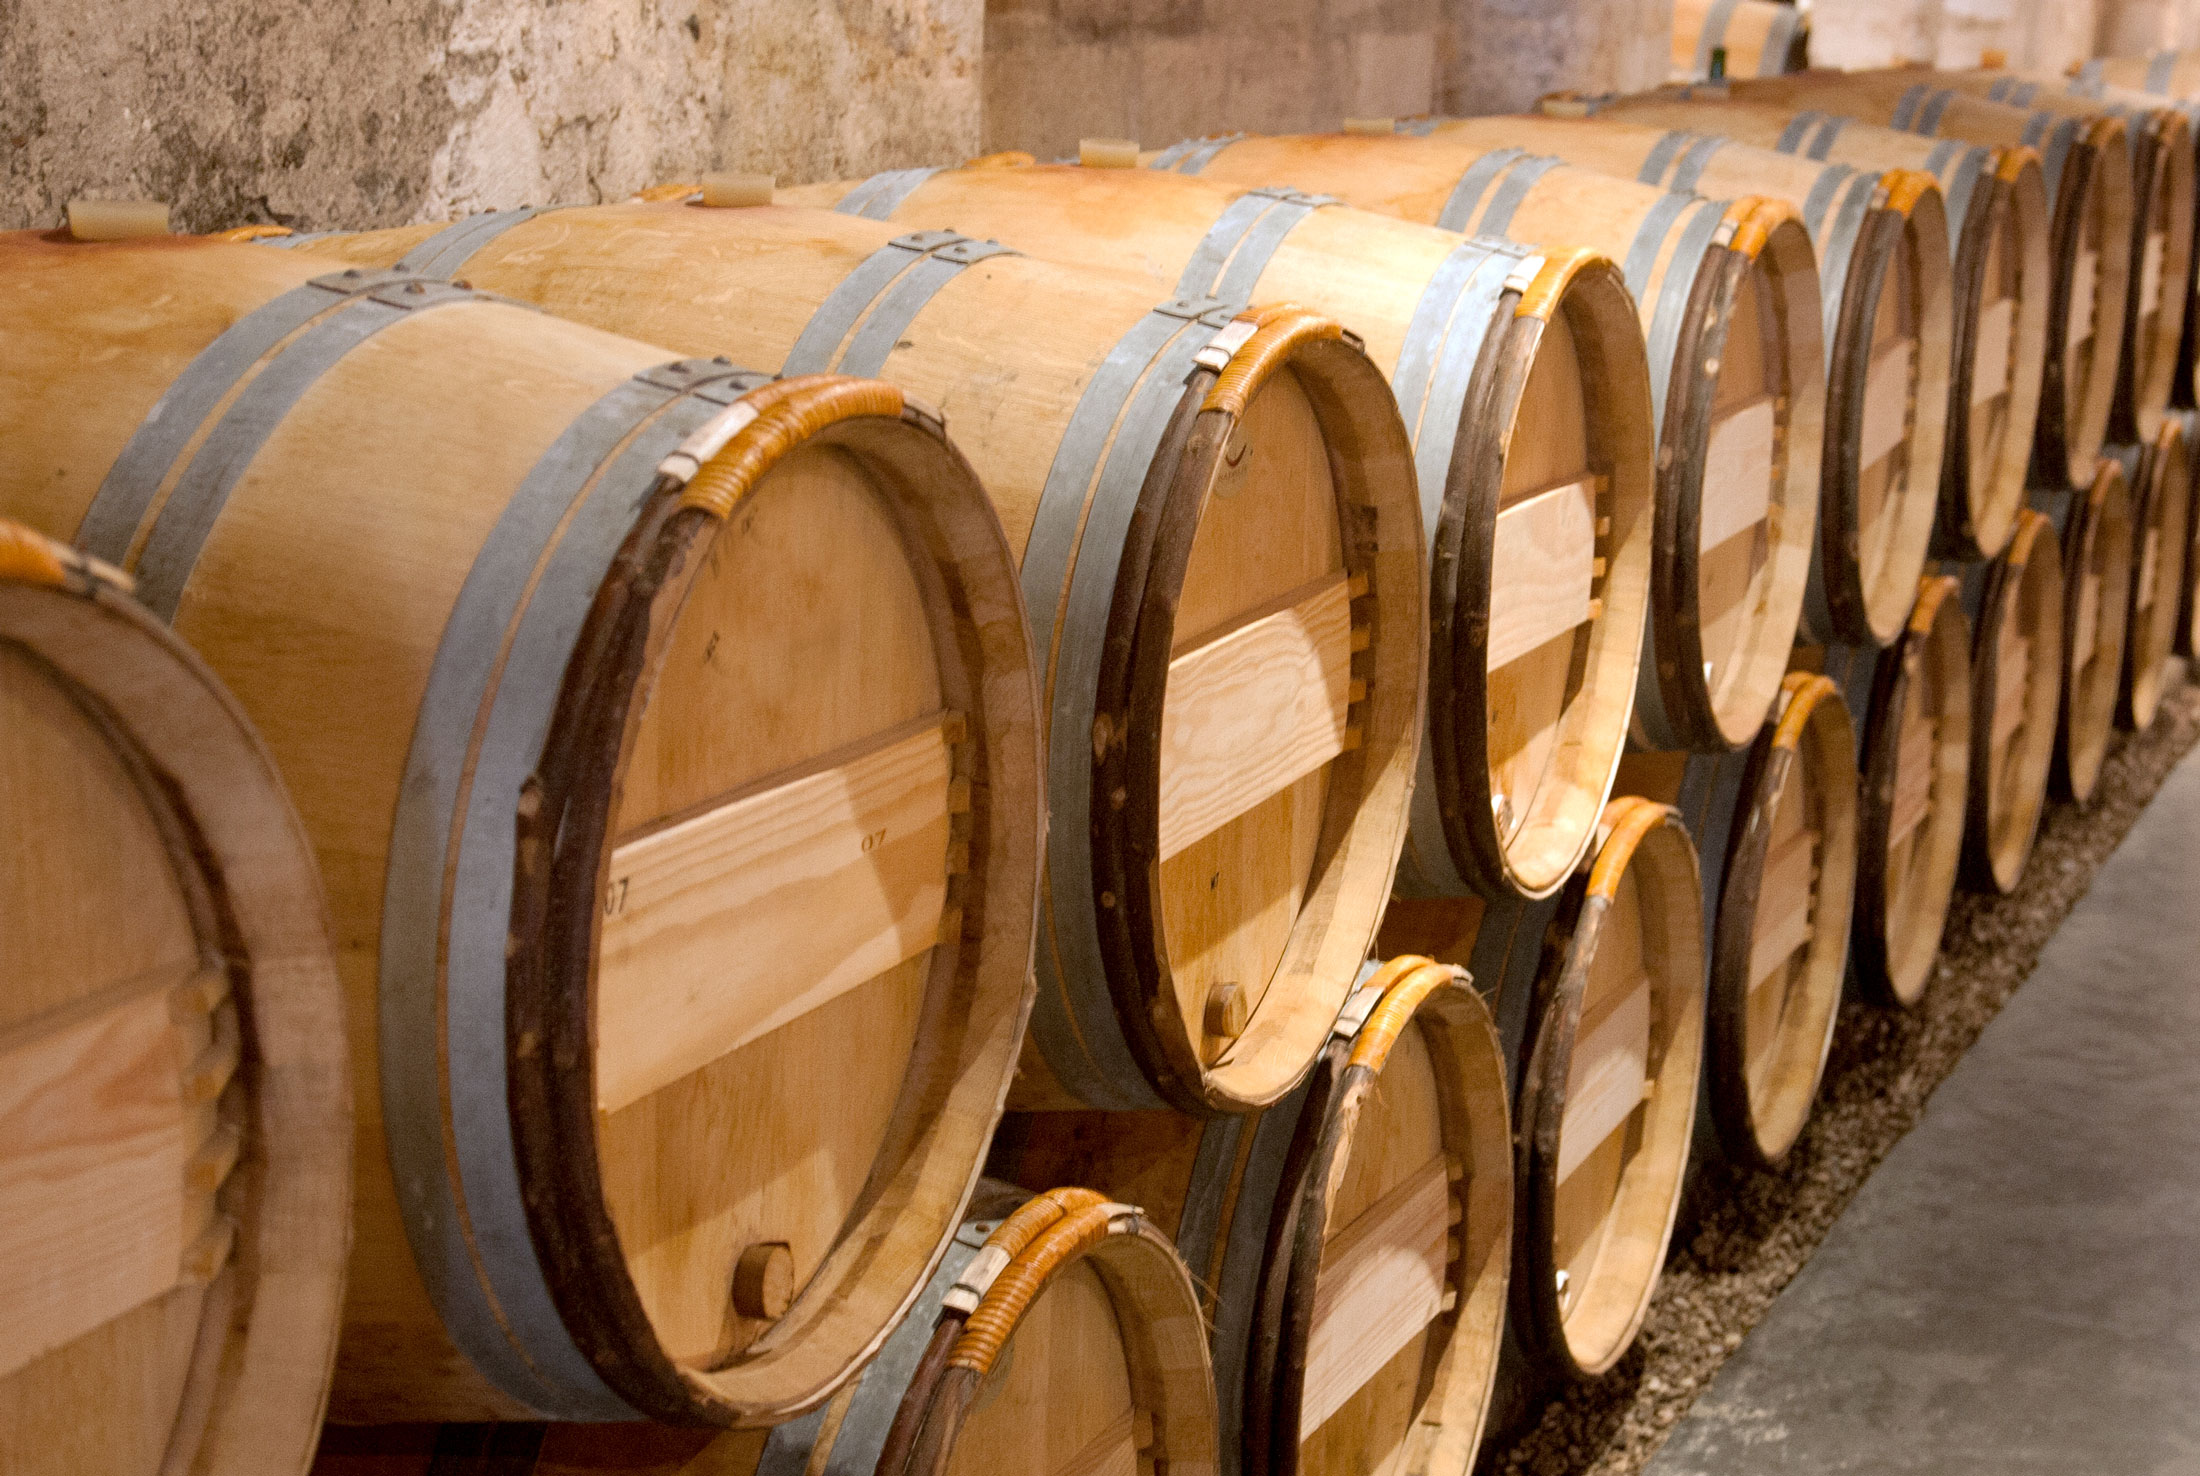 Côtes du Rhône wine